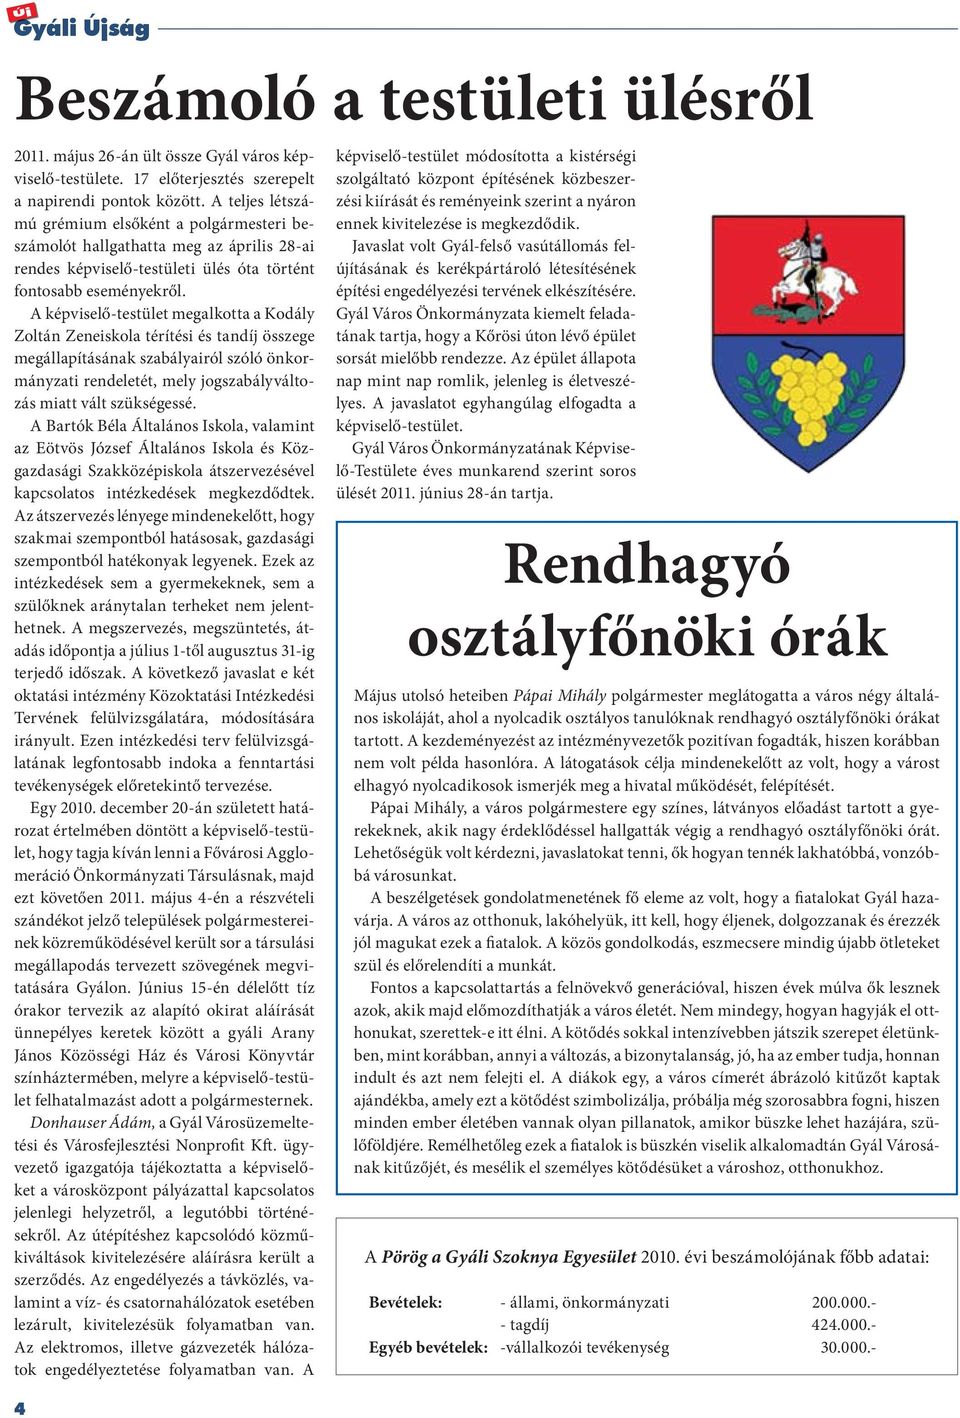 A képviselő-testület megalkotta a Kodály Zoltán Zeneiskola térítési és tandíj összege megállapításának szabályairól szóló önkormányzati rendeletét, mely jogszabályváltozás miatt vált szükségessé.